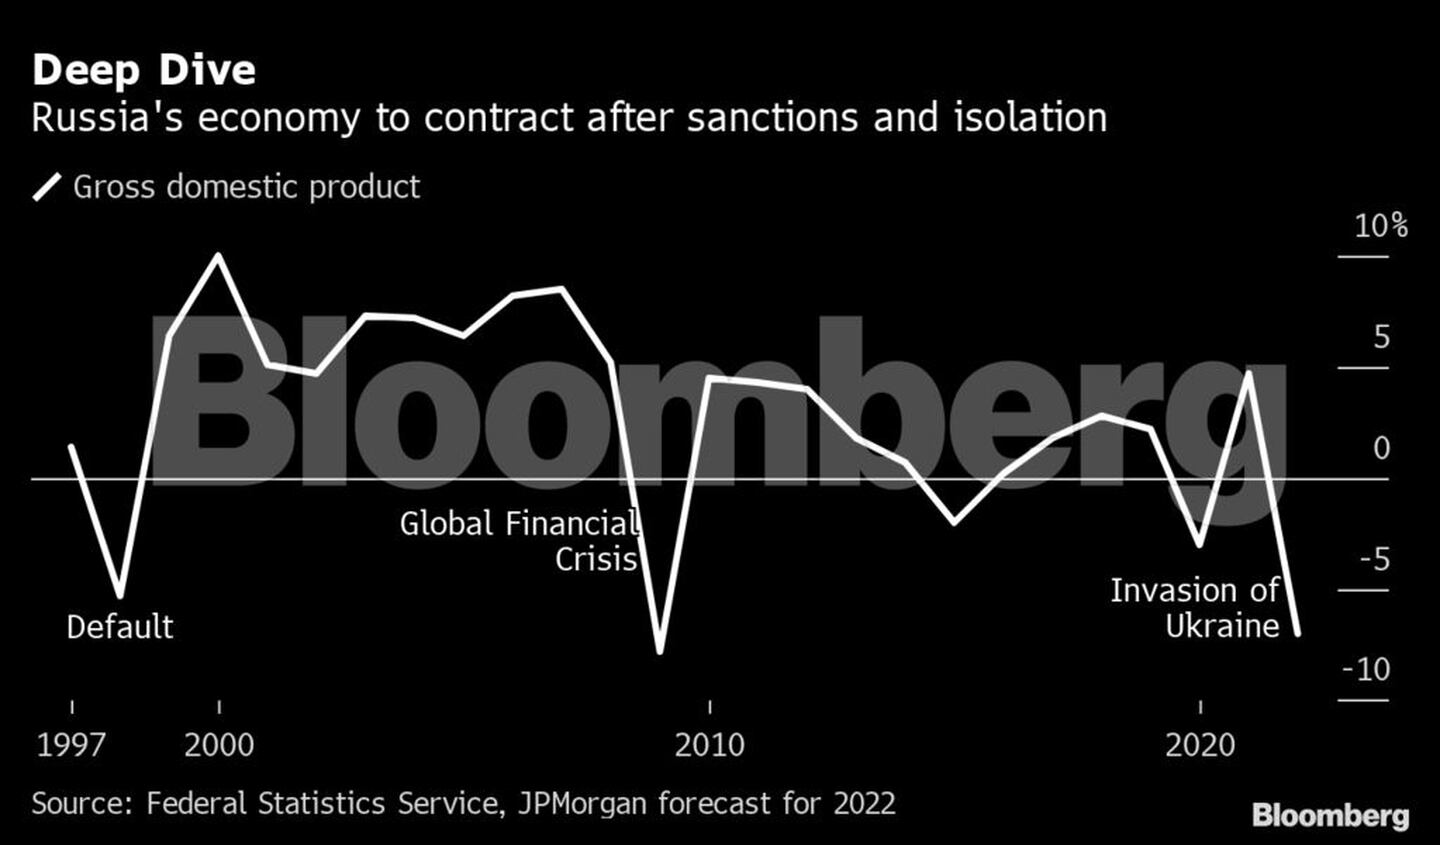 La economía rusa se dirige a una contracción tras sanciones y aislamientodfd